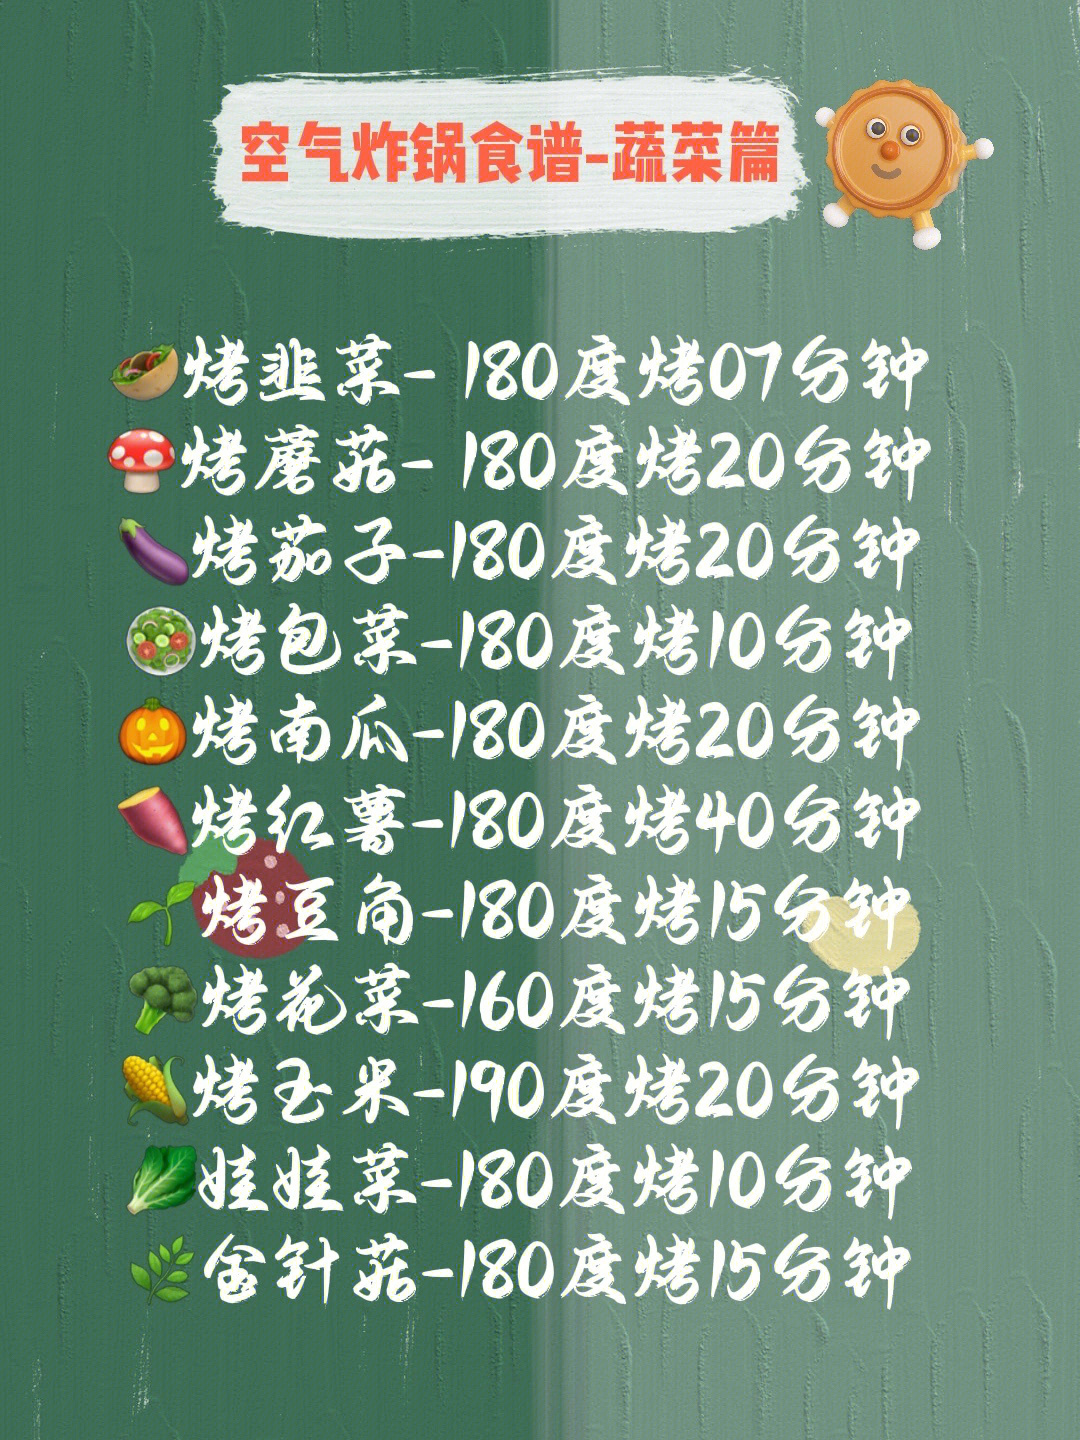 九阳空气炸锅机食谱图片